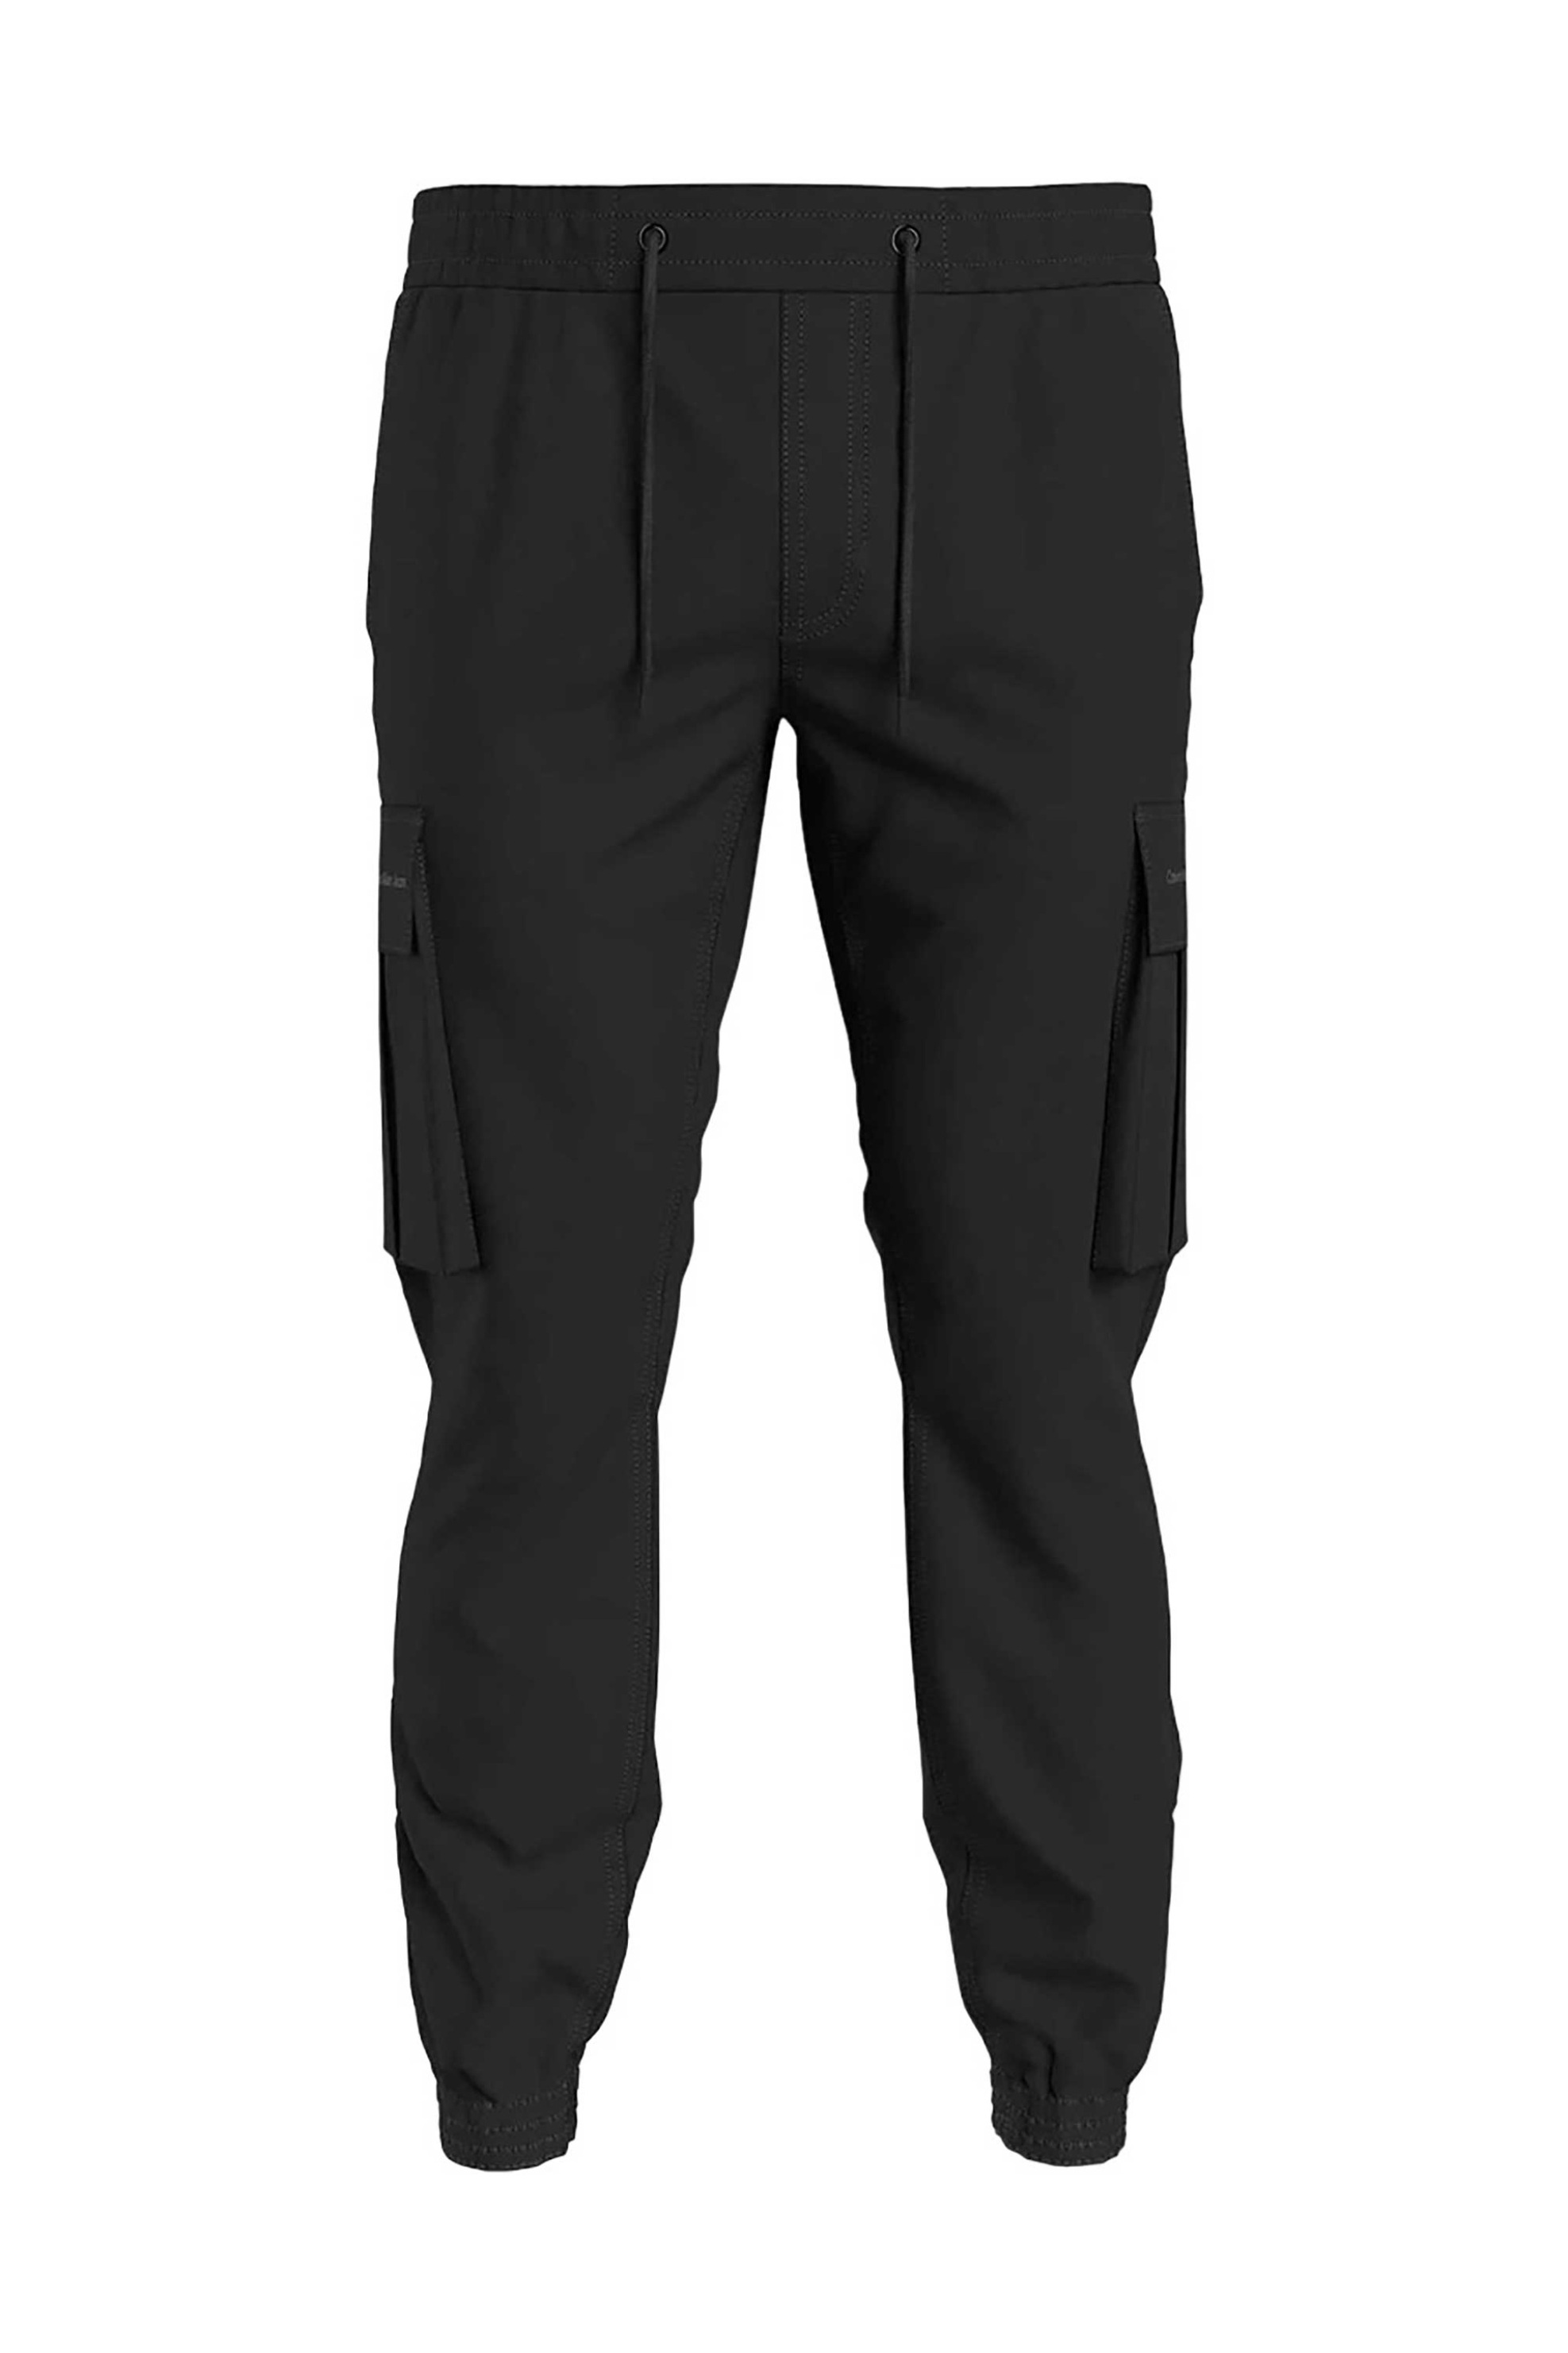 Ανδρική Μόδα > Ανδρικά Ρούχα > Ανδρικά Παντελόνια > Ανδρικές Φόρμες CK Jeans ανδρικό cargo παντελόνι φόρμας μονόχρωμο Tapered Fit - J30J324686 Μαύρο